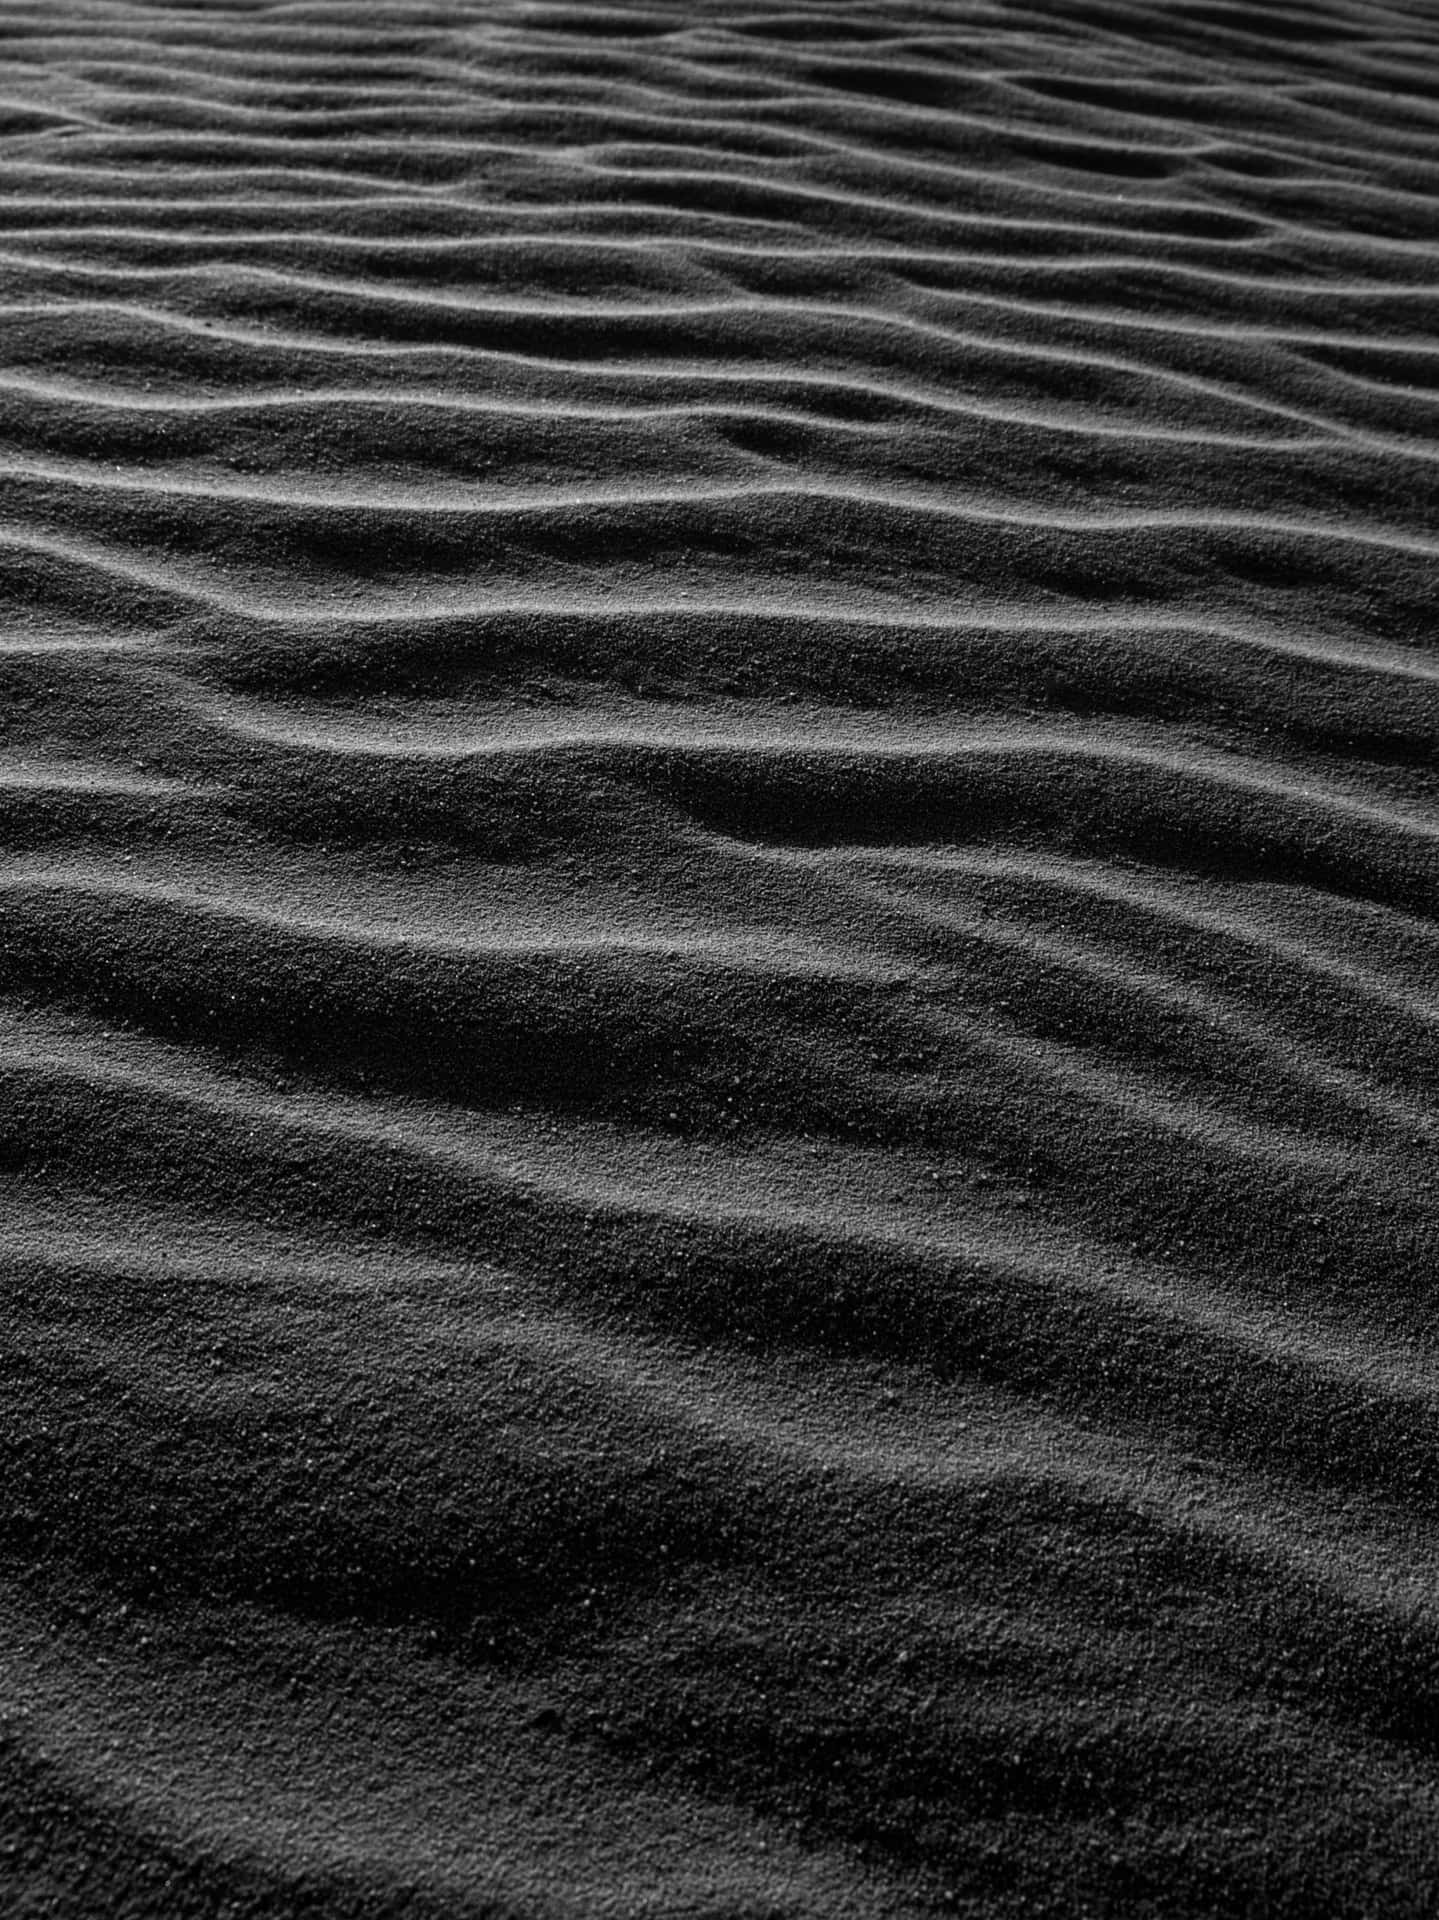 Aesthetic Dark Sand Desert Wallpaper